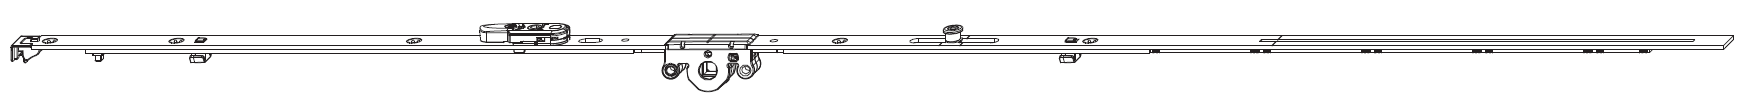 MAICO -  Cremonese MULTI-MATIC anta ribalta antieffrazione altezza maniglia fissa con piedino e dss per ribalta - gr / dim. 1340 - entrata 15 - alt. man. 1050 - lbb/hbb 1091 - 1340